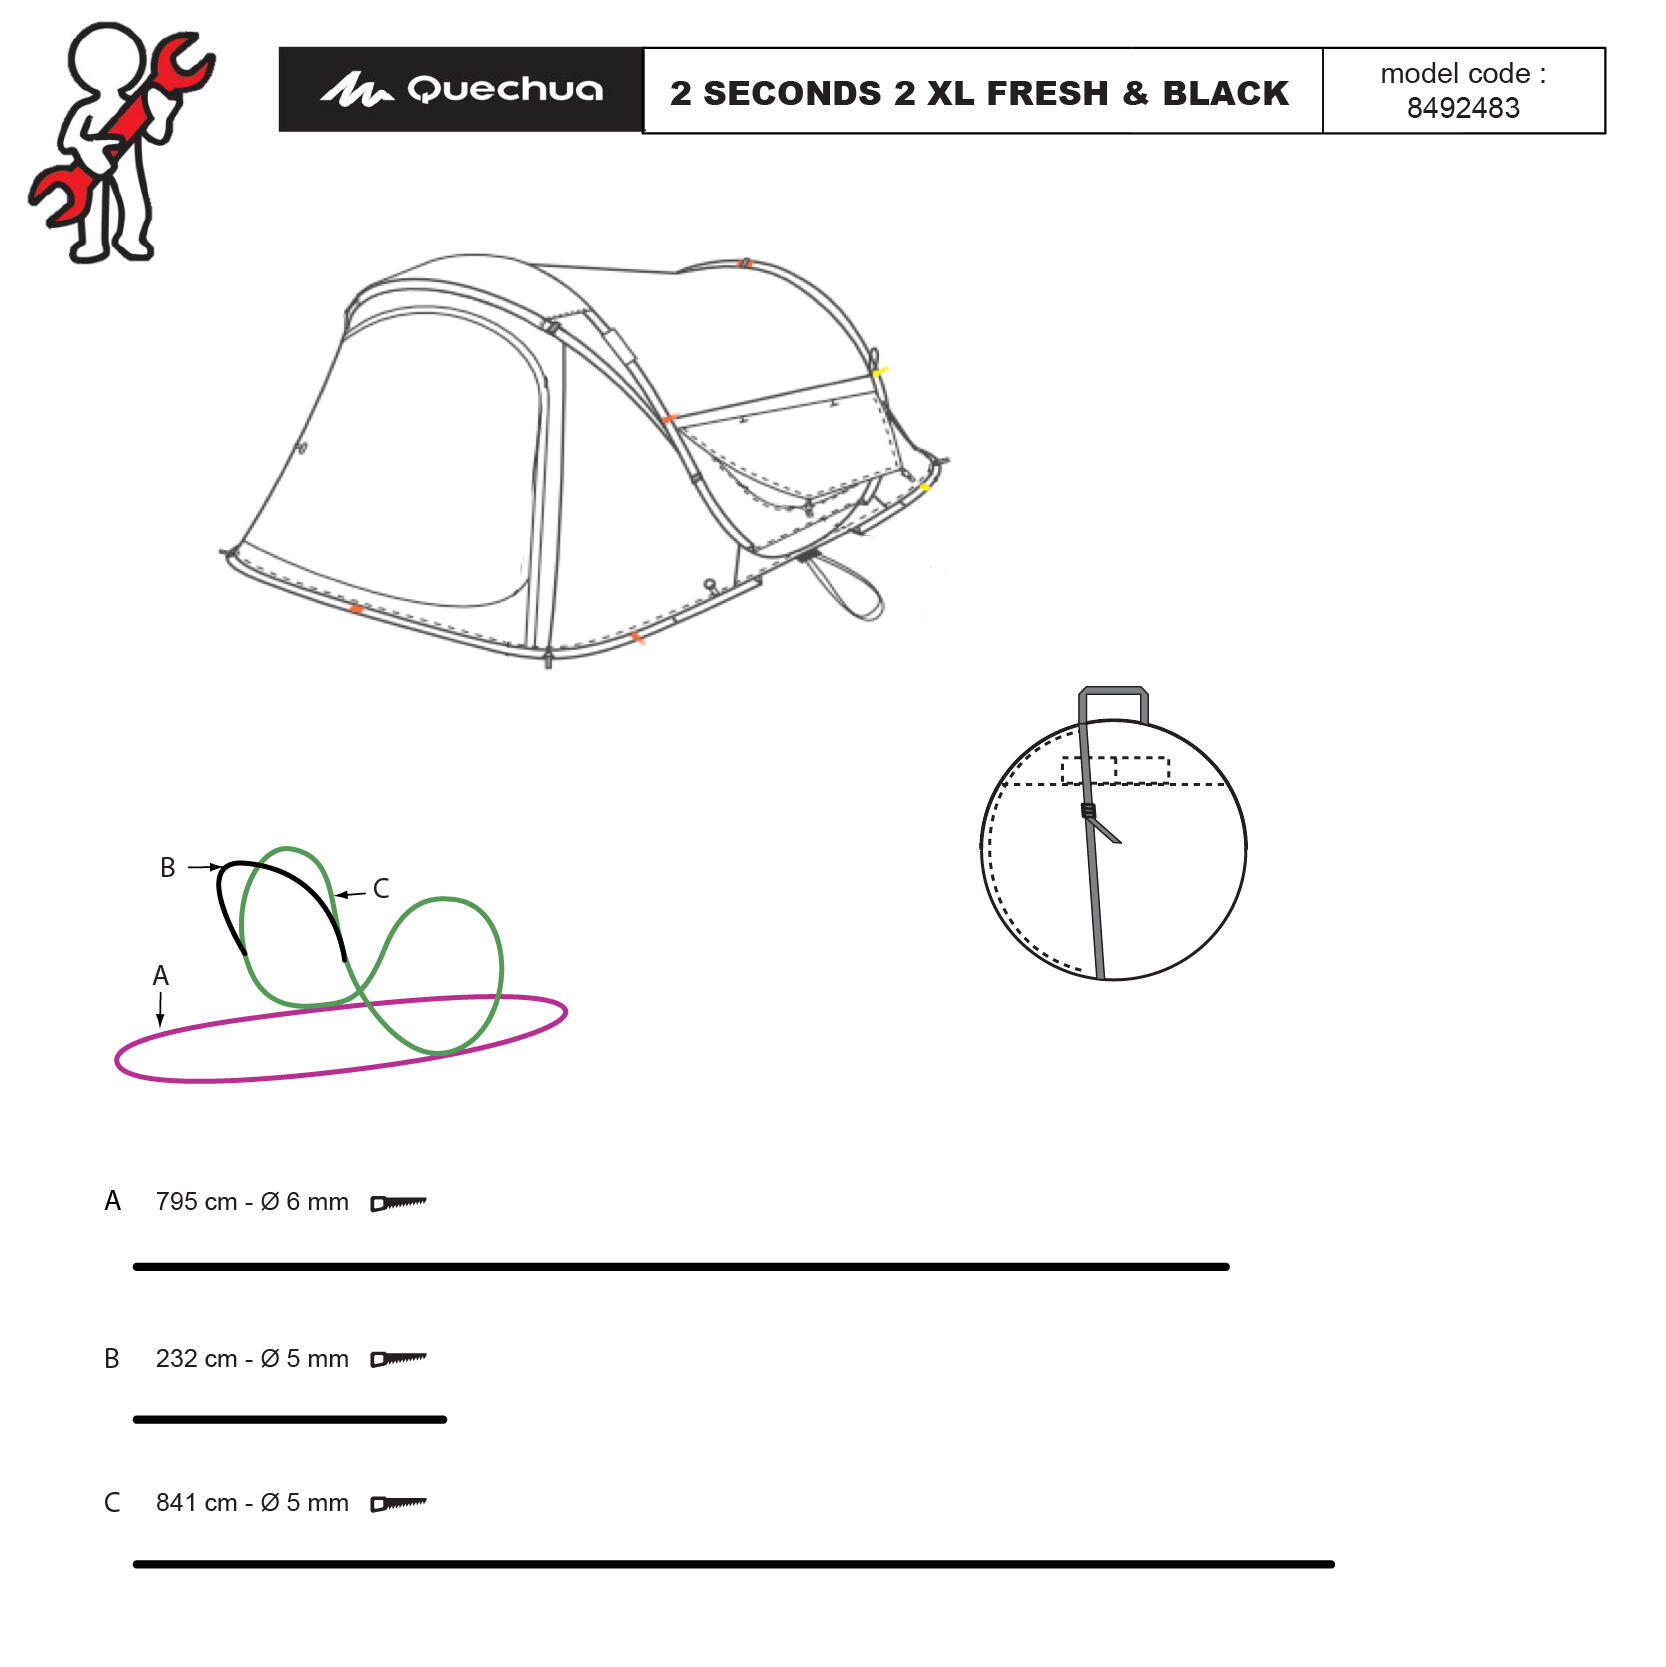 herstellen-tent-2-seconds-2-personen-fresh-and-black-XL-quechua-stuk